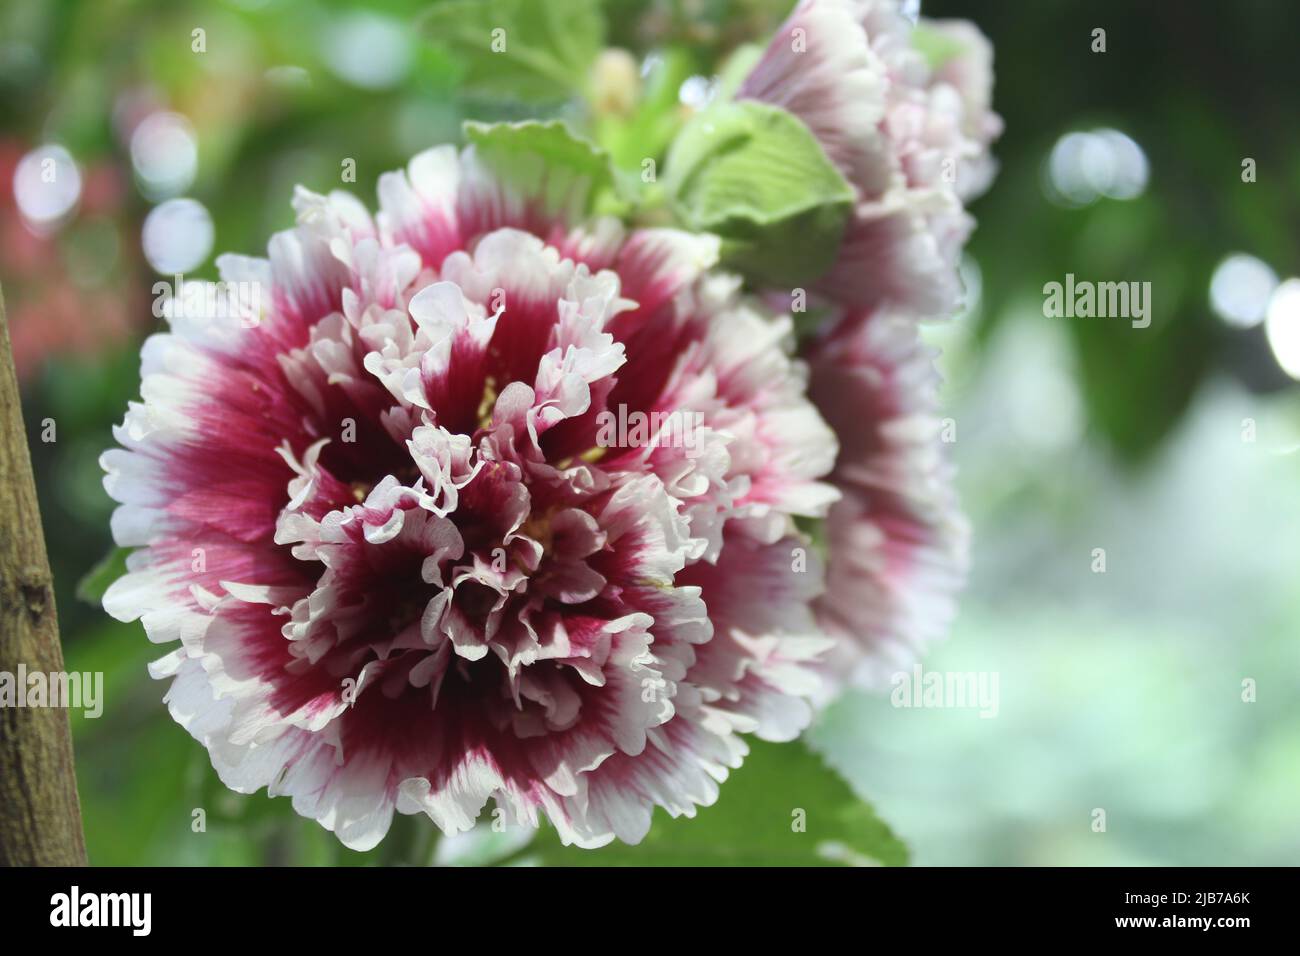 Alcea rosea, el hollyhock común, es una planta ornamental con flores de  dicot perteneciente a la familia malvaceae. Flor púrpura y blanca  Fotografía de stock - Alamy